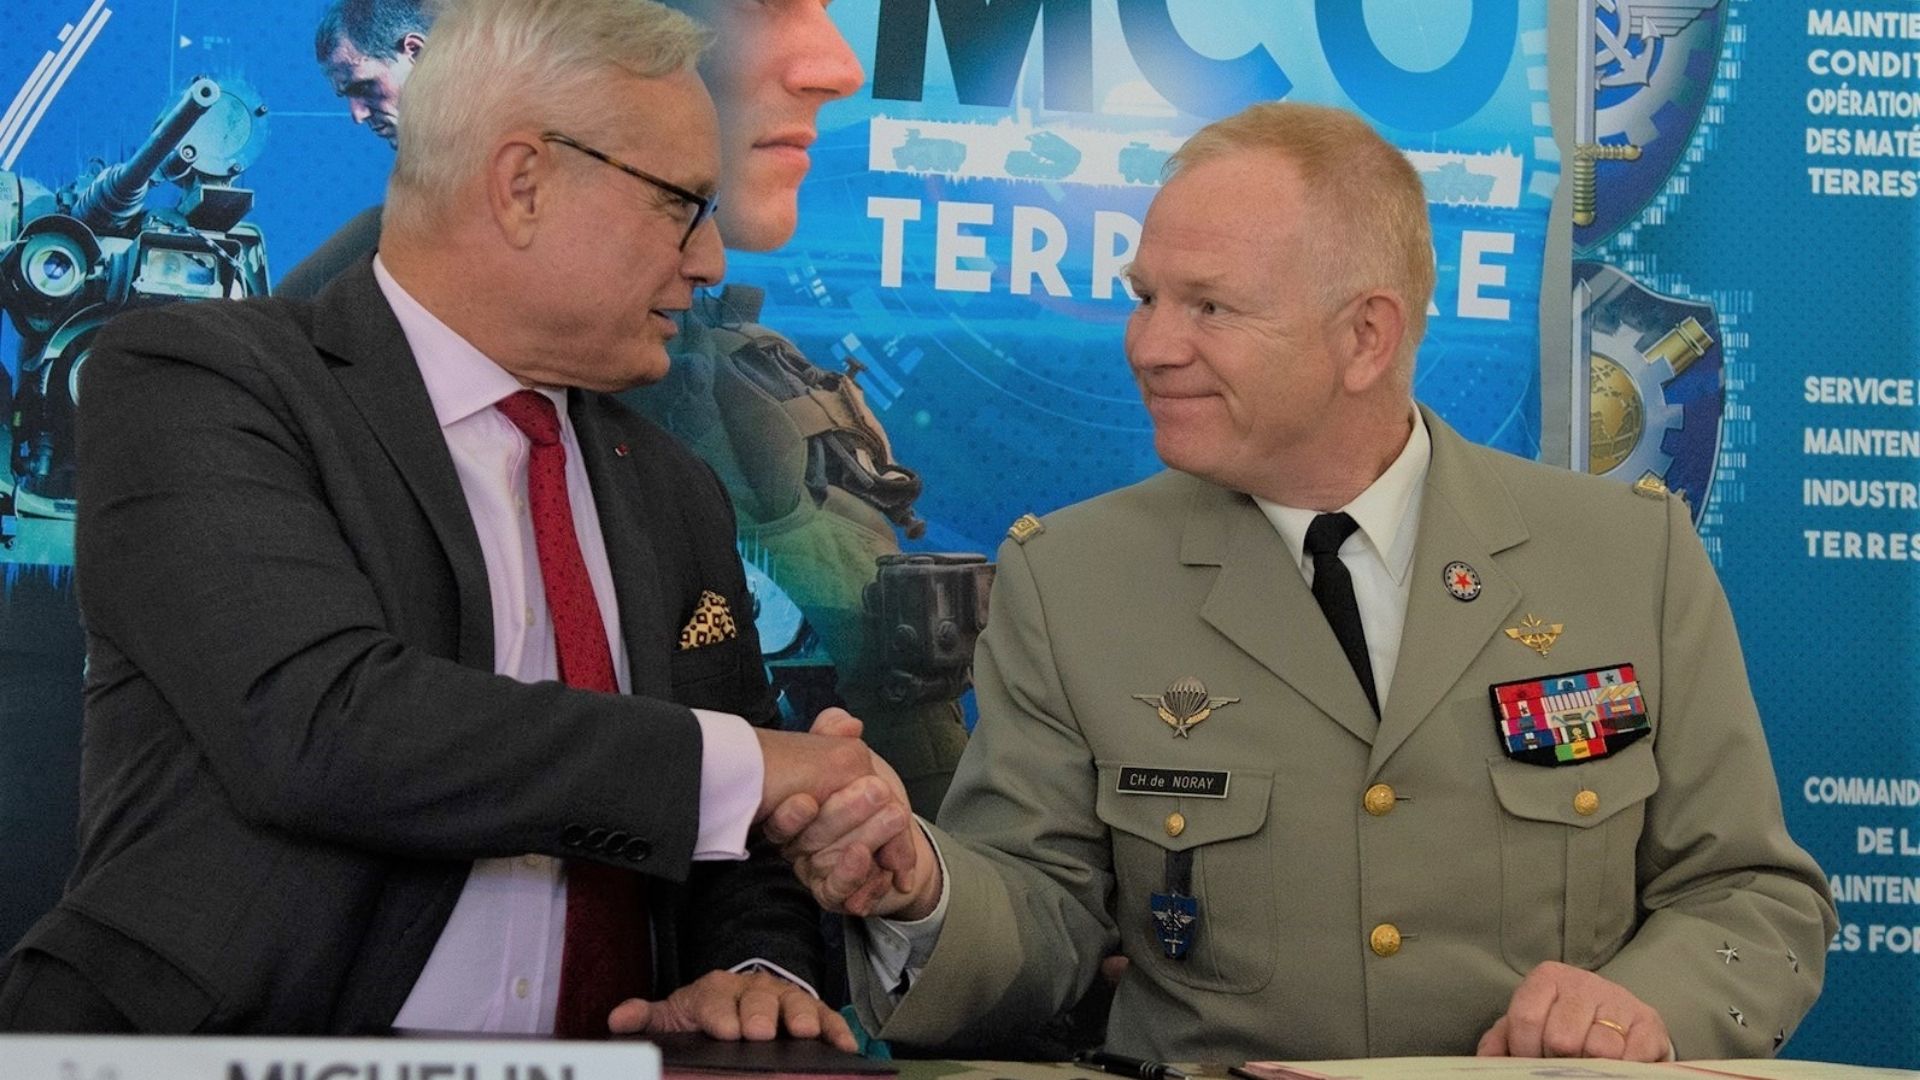 Signature de la charte de partenariat du MCO-Terrestre par l’entreprise Michelin, en présence du directeur central de la Simmt, le général de corps d’armée De Noray.